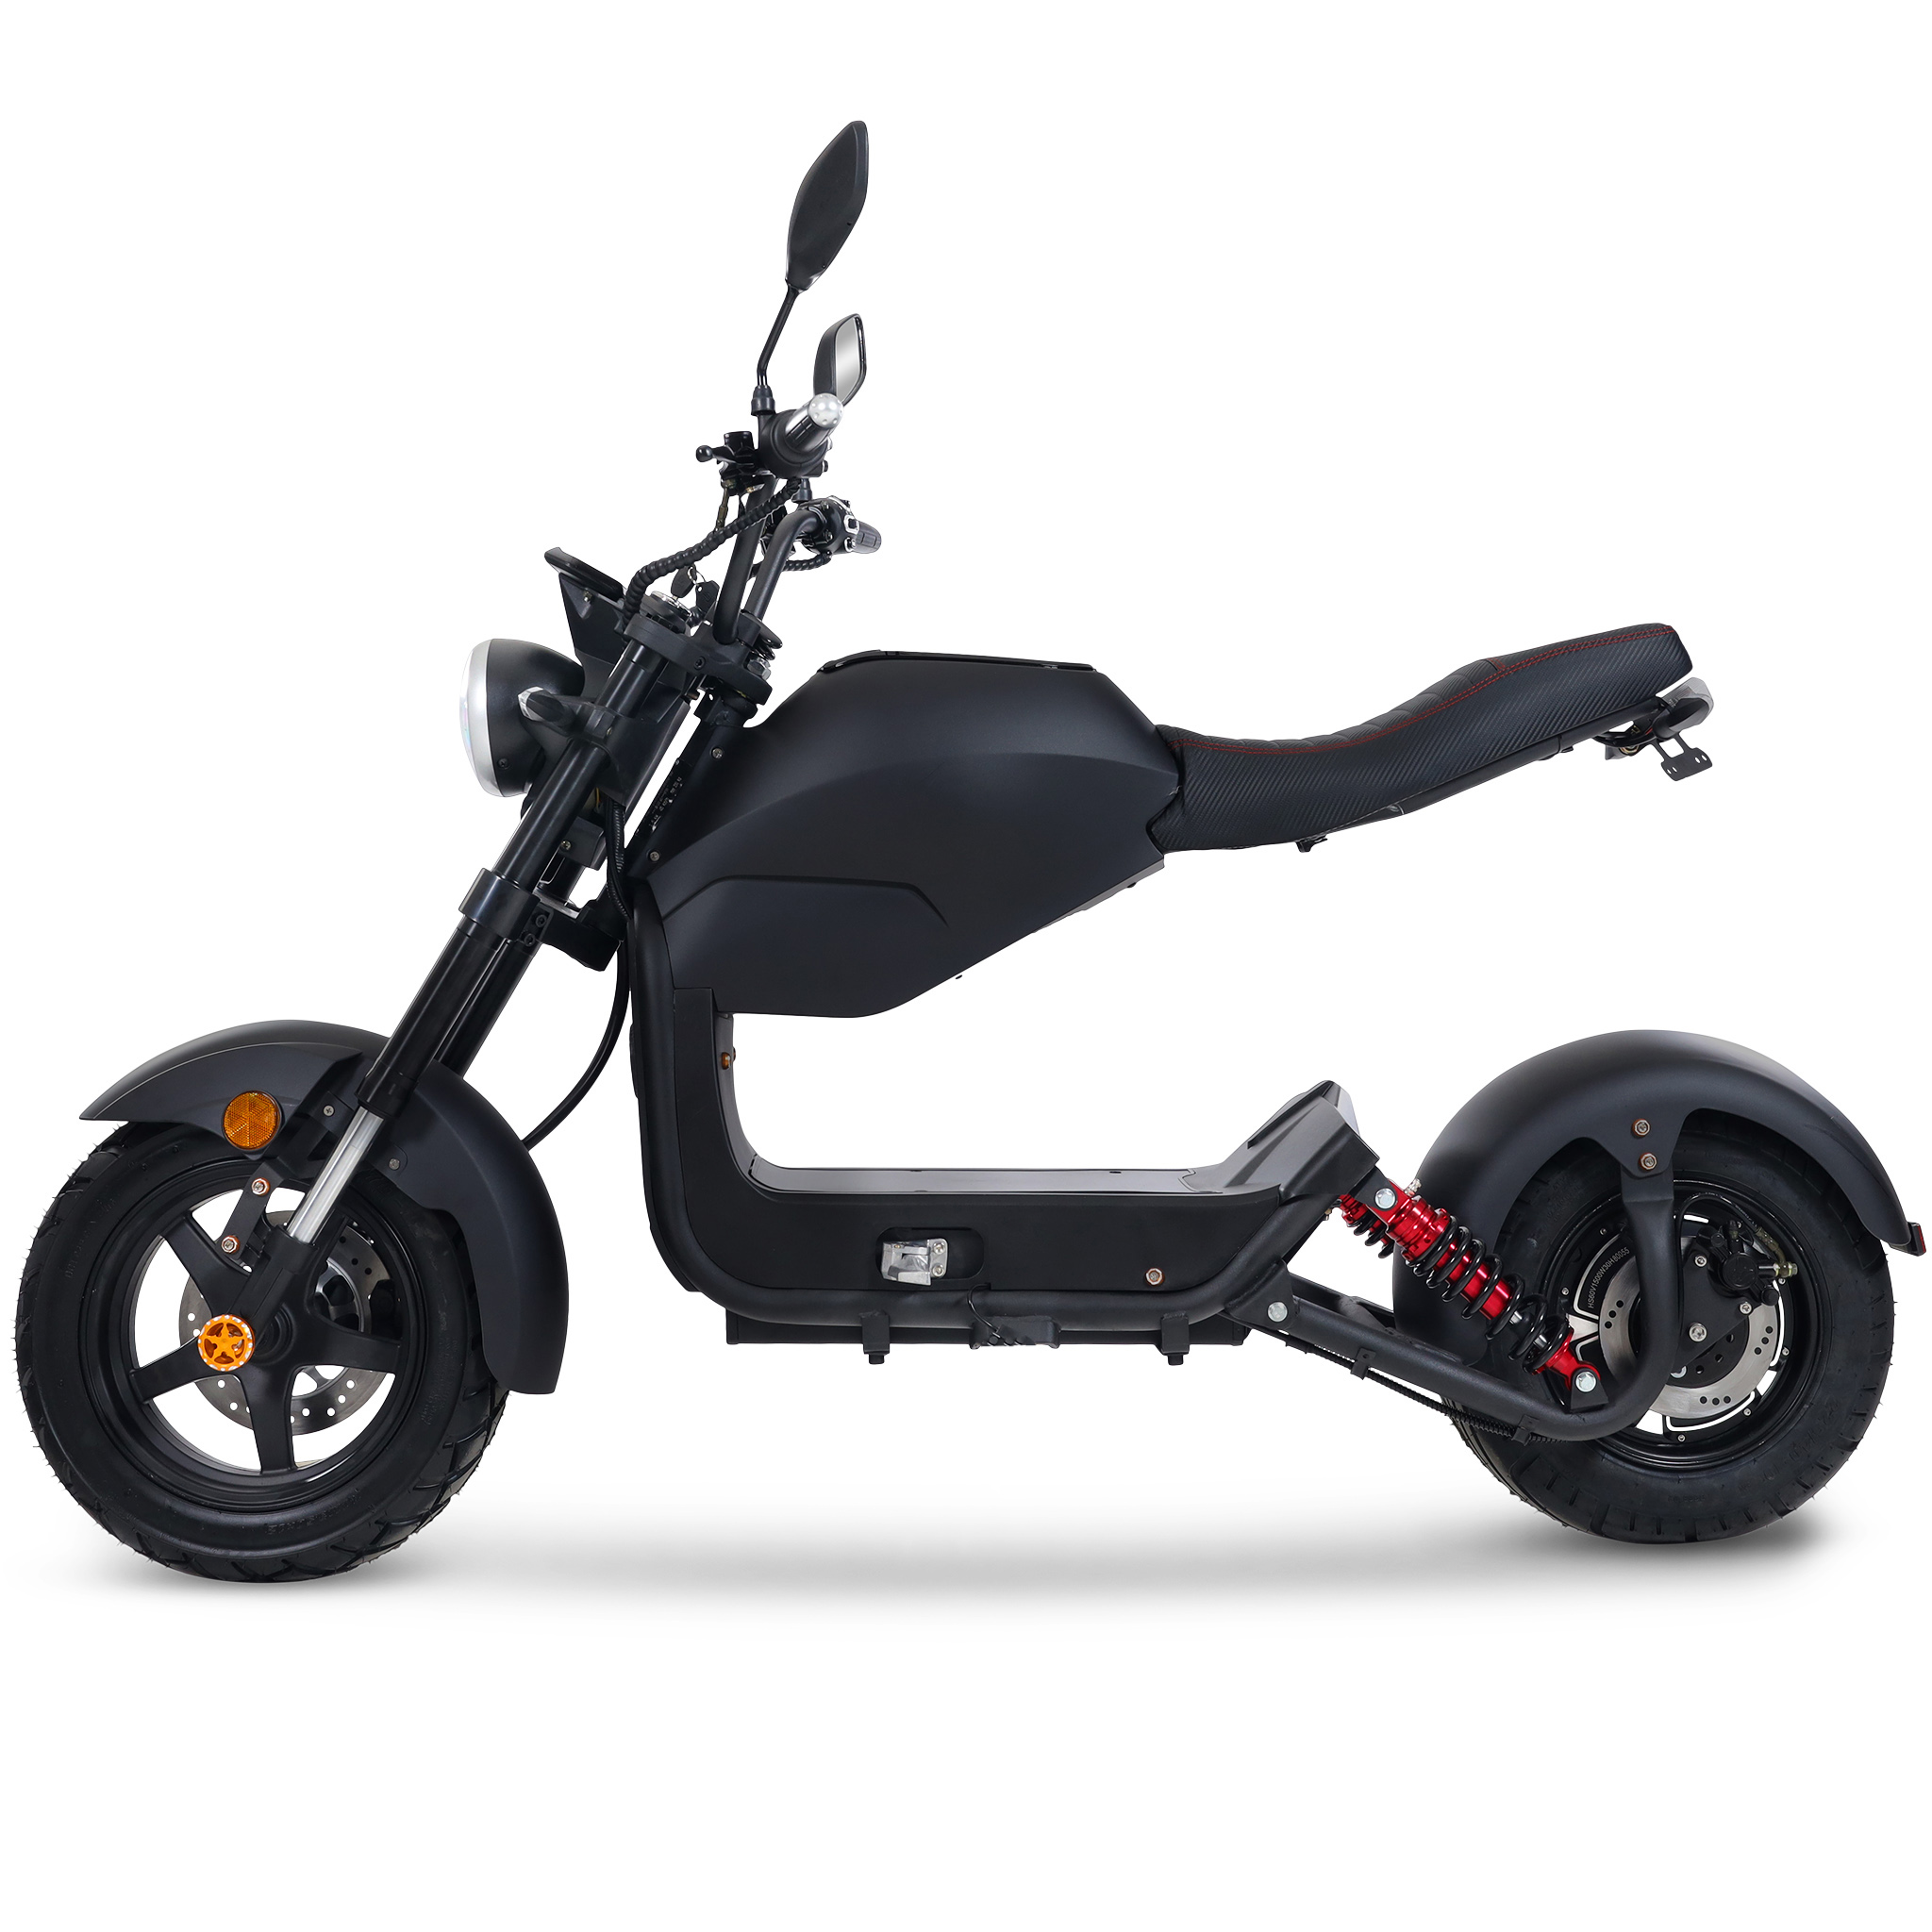 Fatscooter 2000W Urban Rider | Moped klass 1 | 6 mil på en laddning